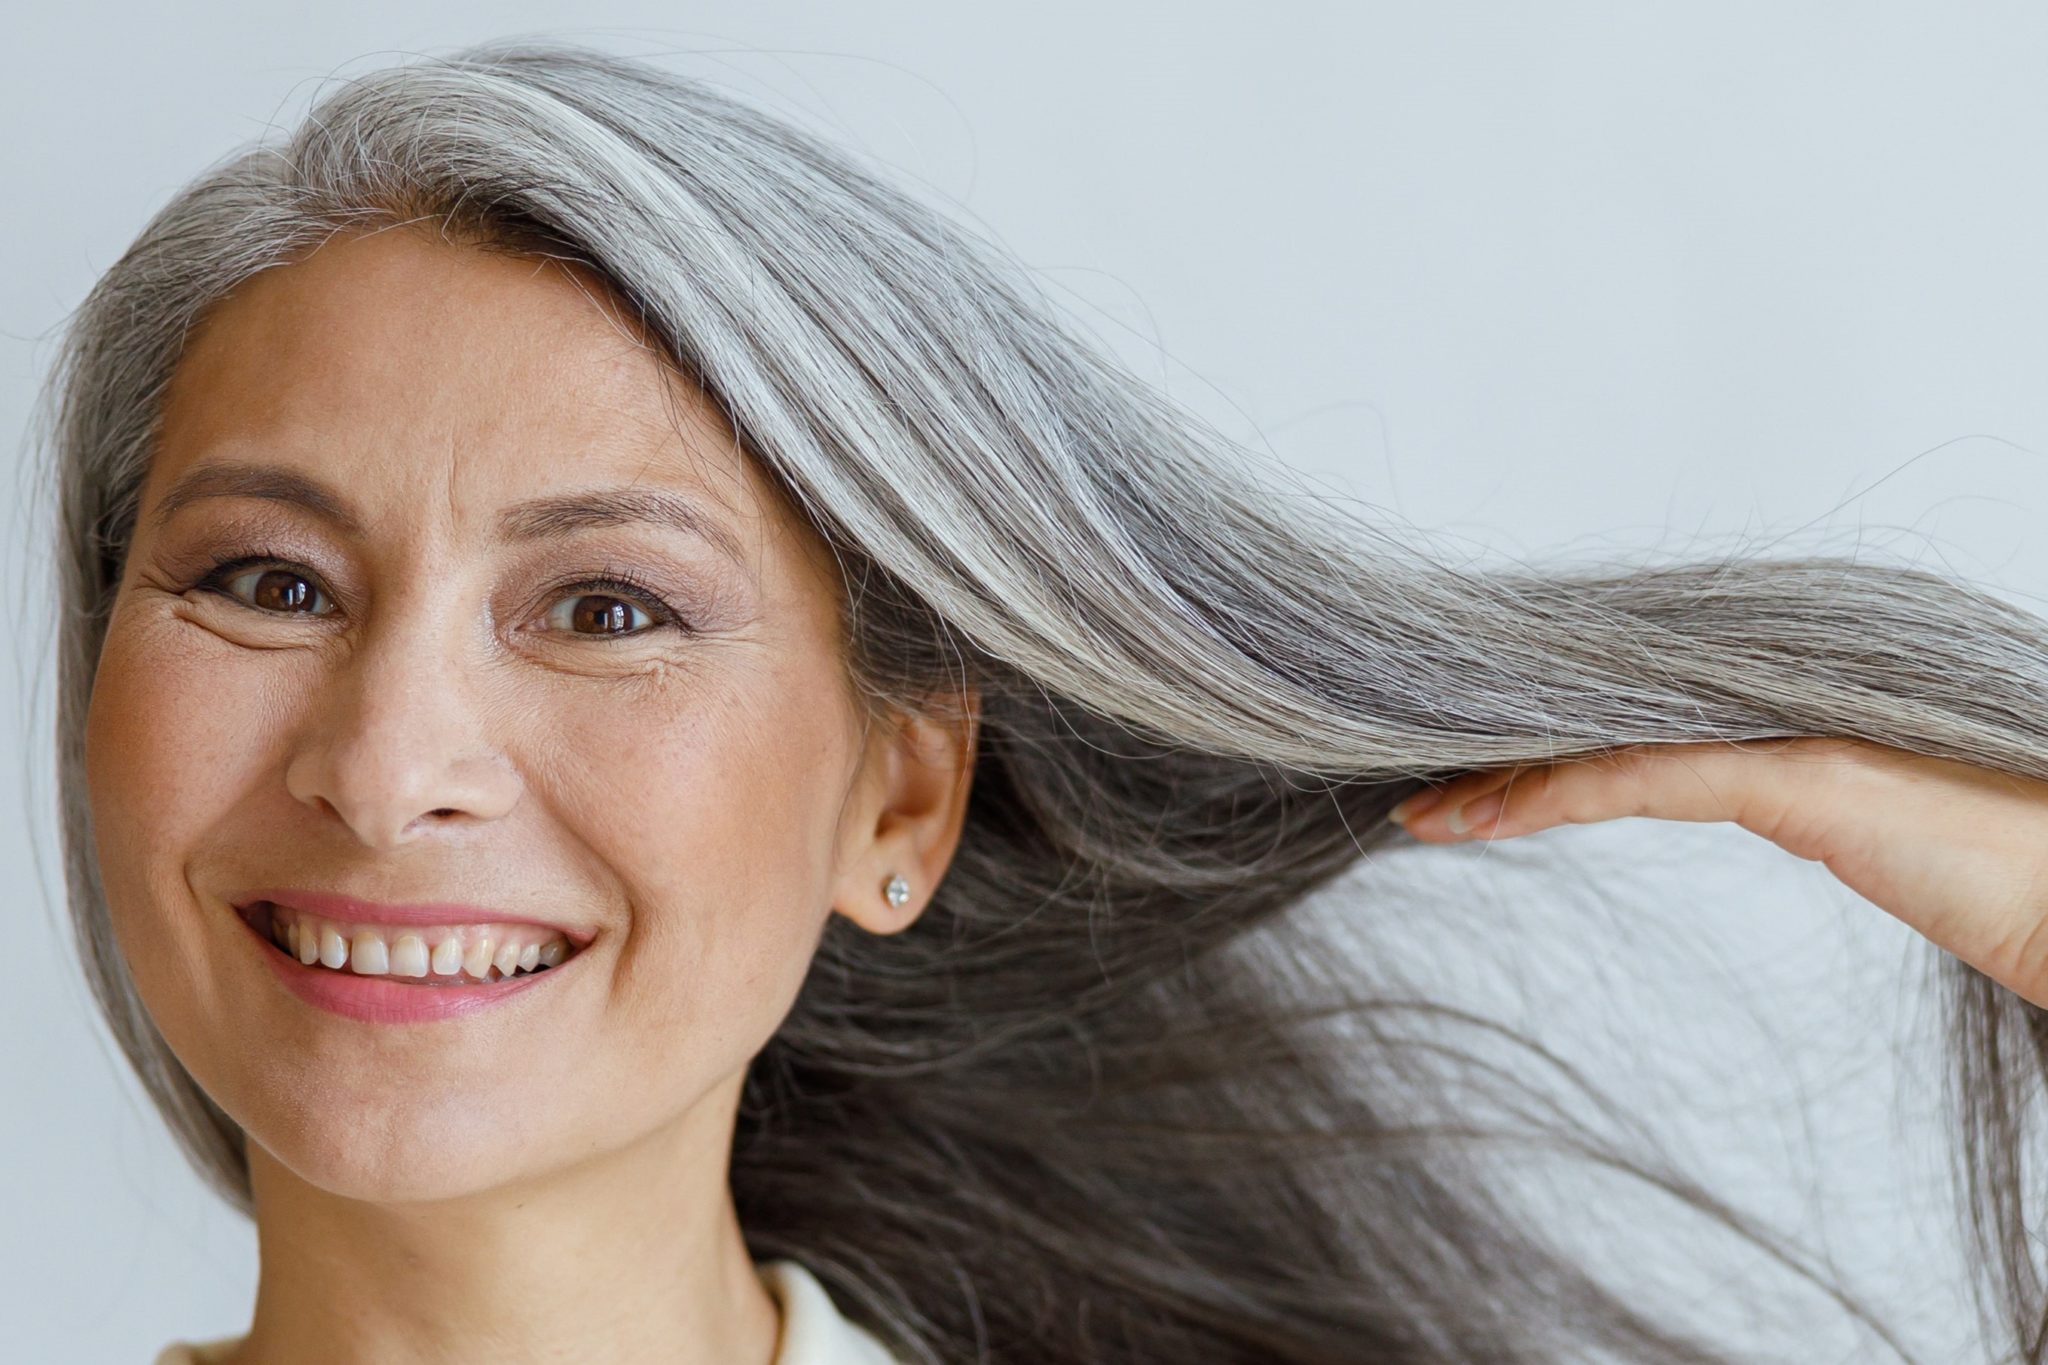 Heureuse dame asiatique d'âge moyen montre des cheveux argentés naturels posant sur fond clair en studio. Mode de vie beauté mature